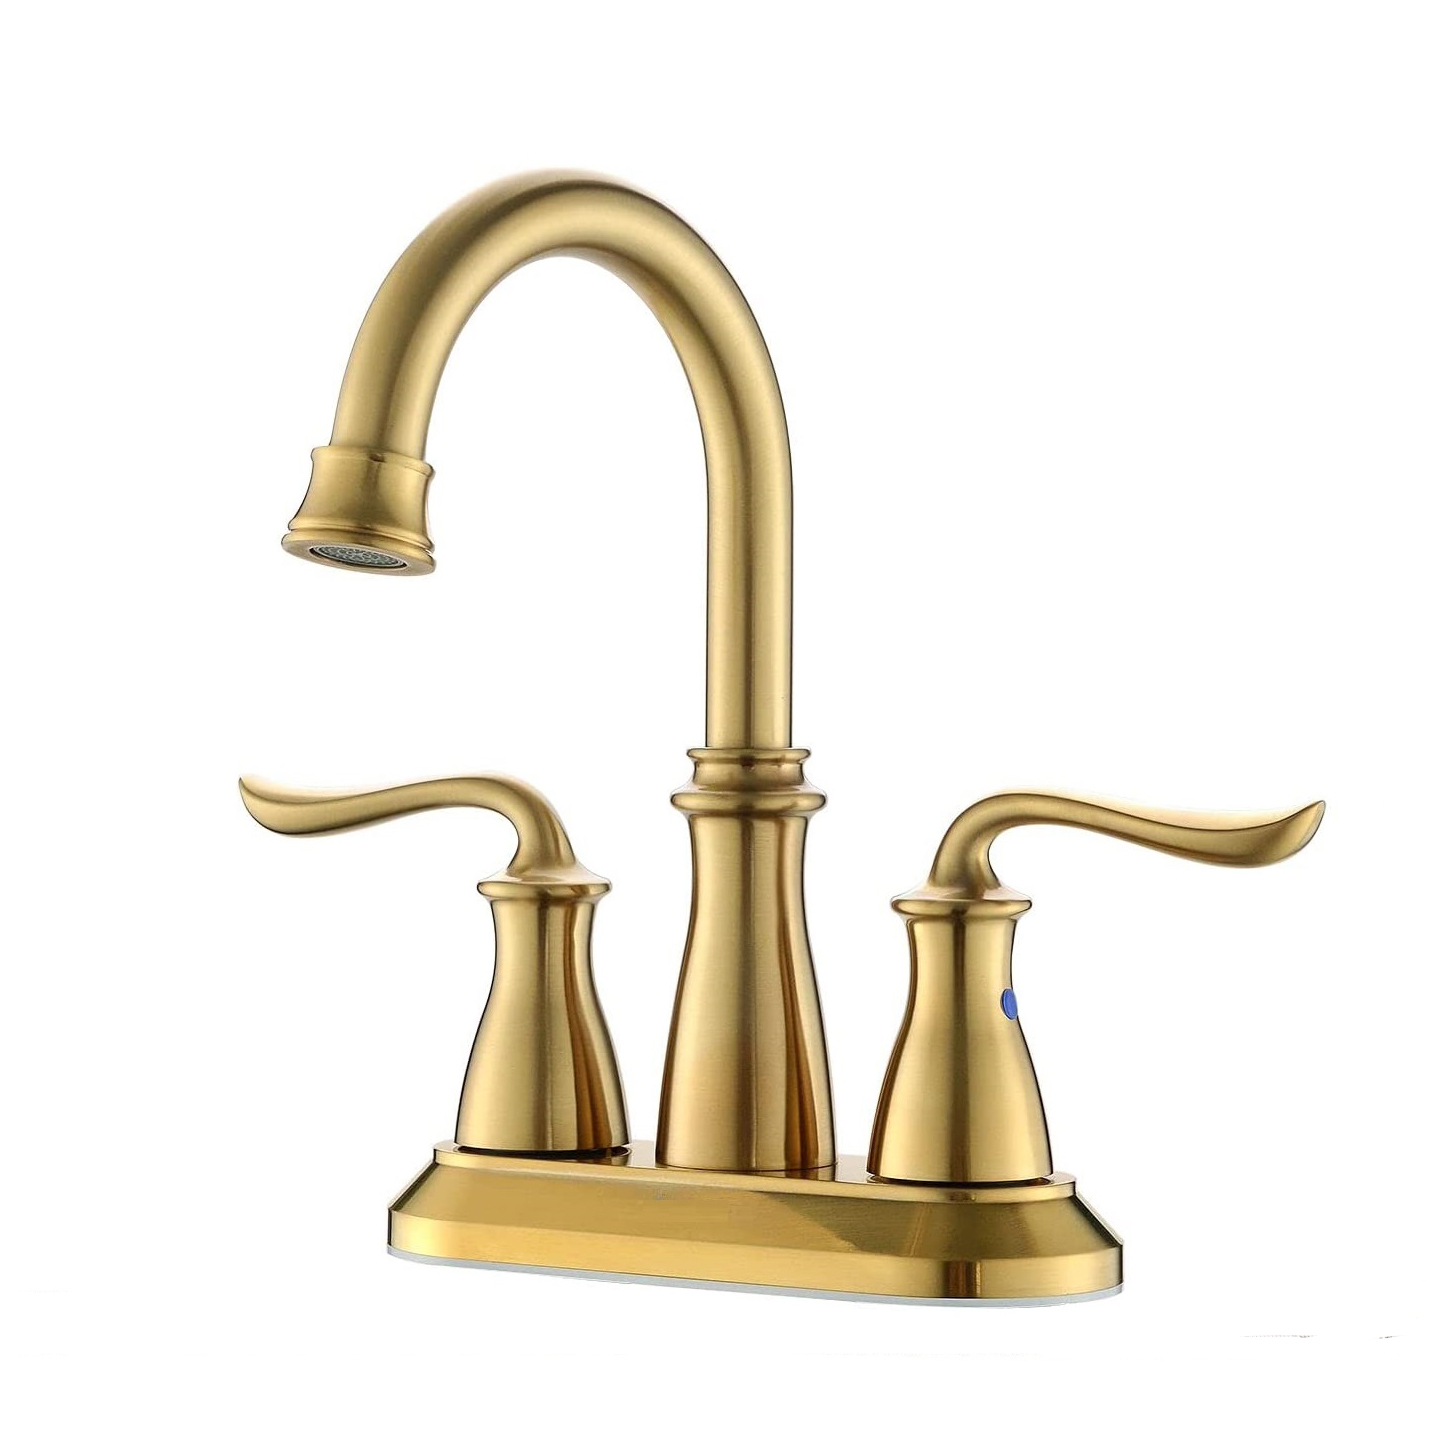 Améliorez l'apparence de votre salle de bain avec des robinets de salle de bain en or brossé